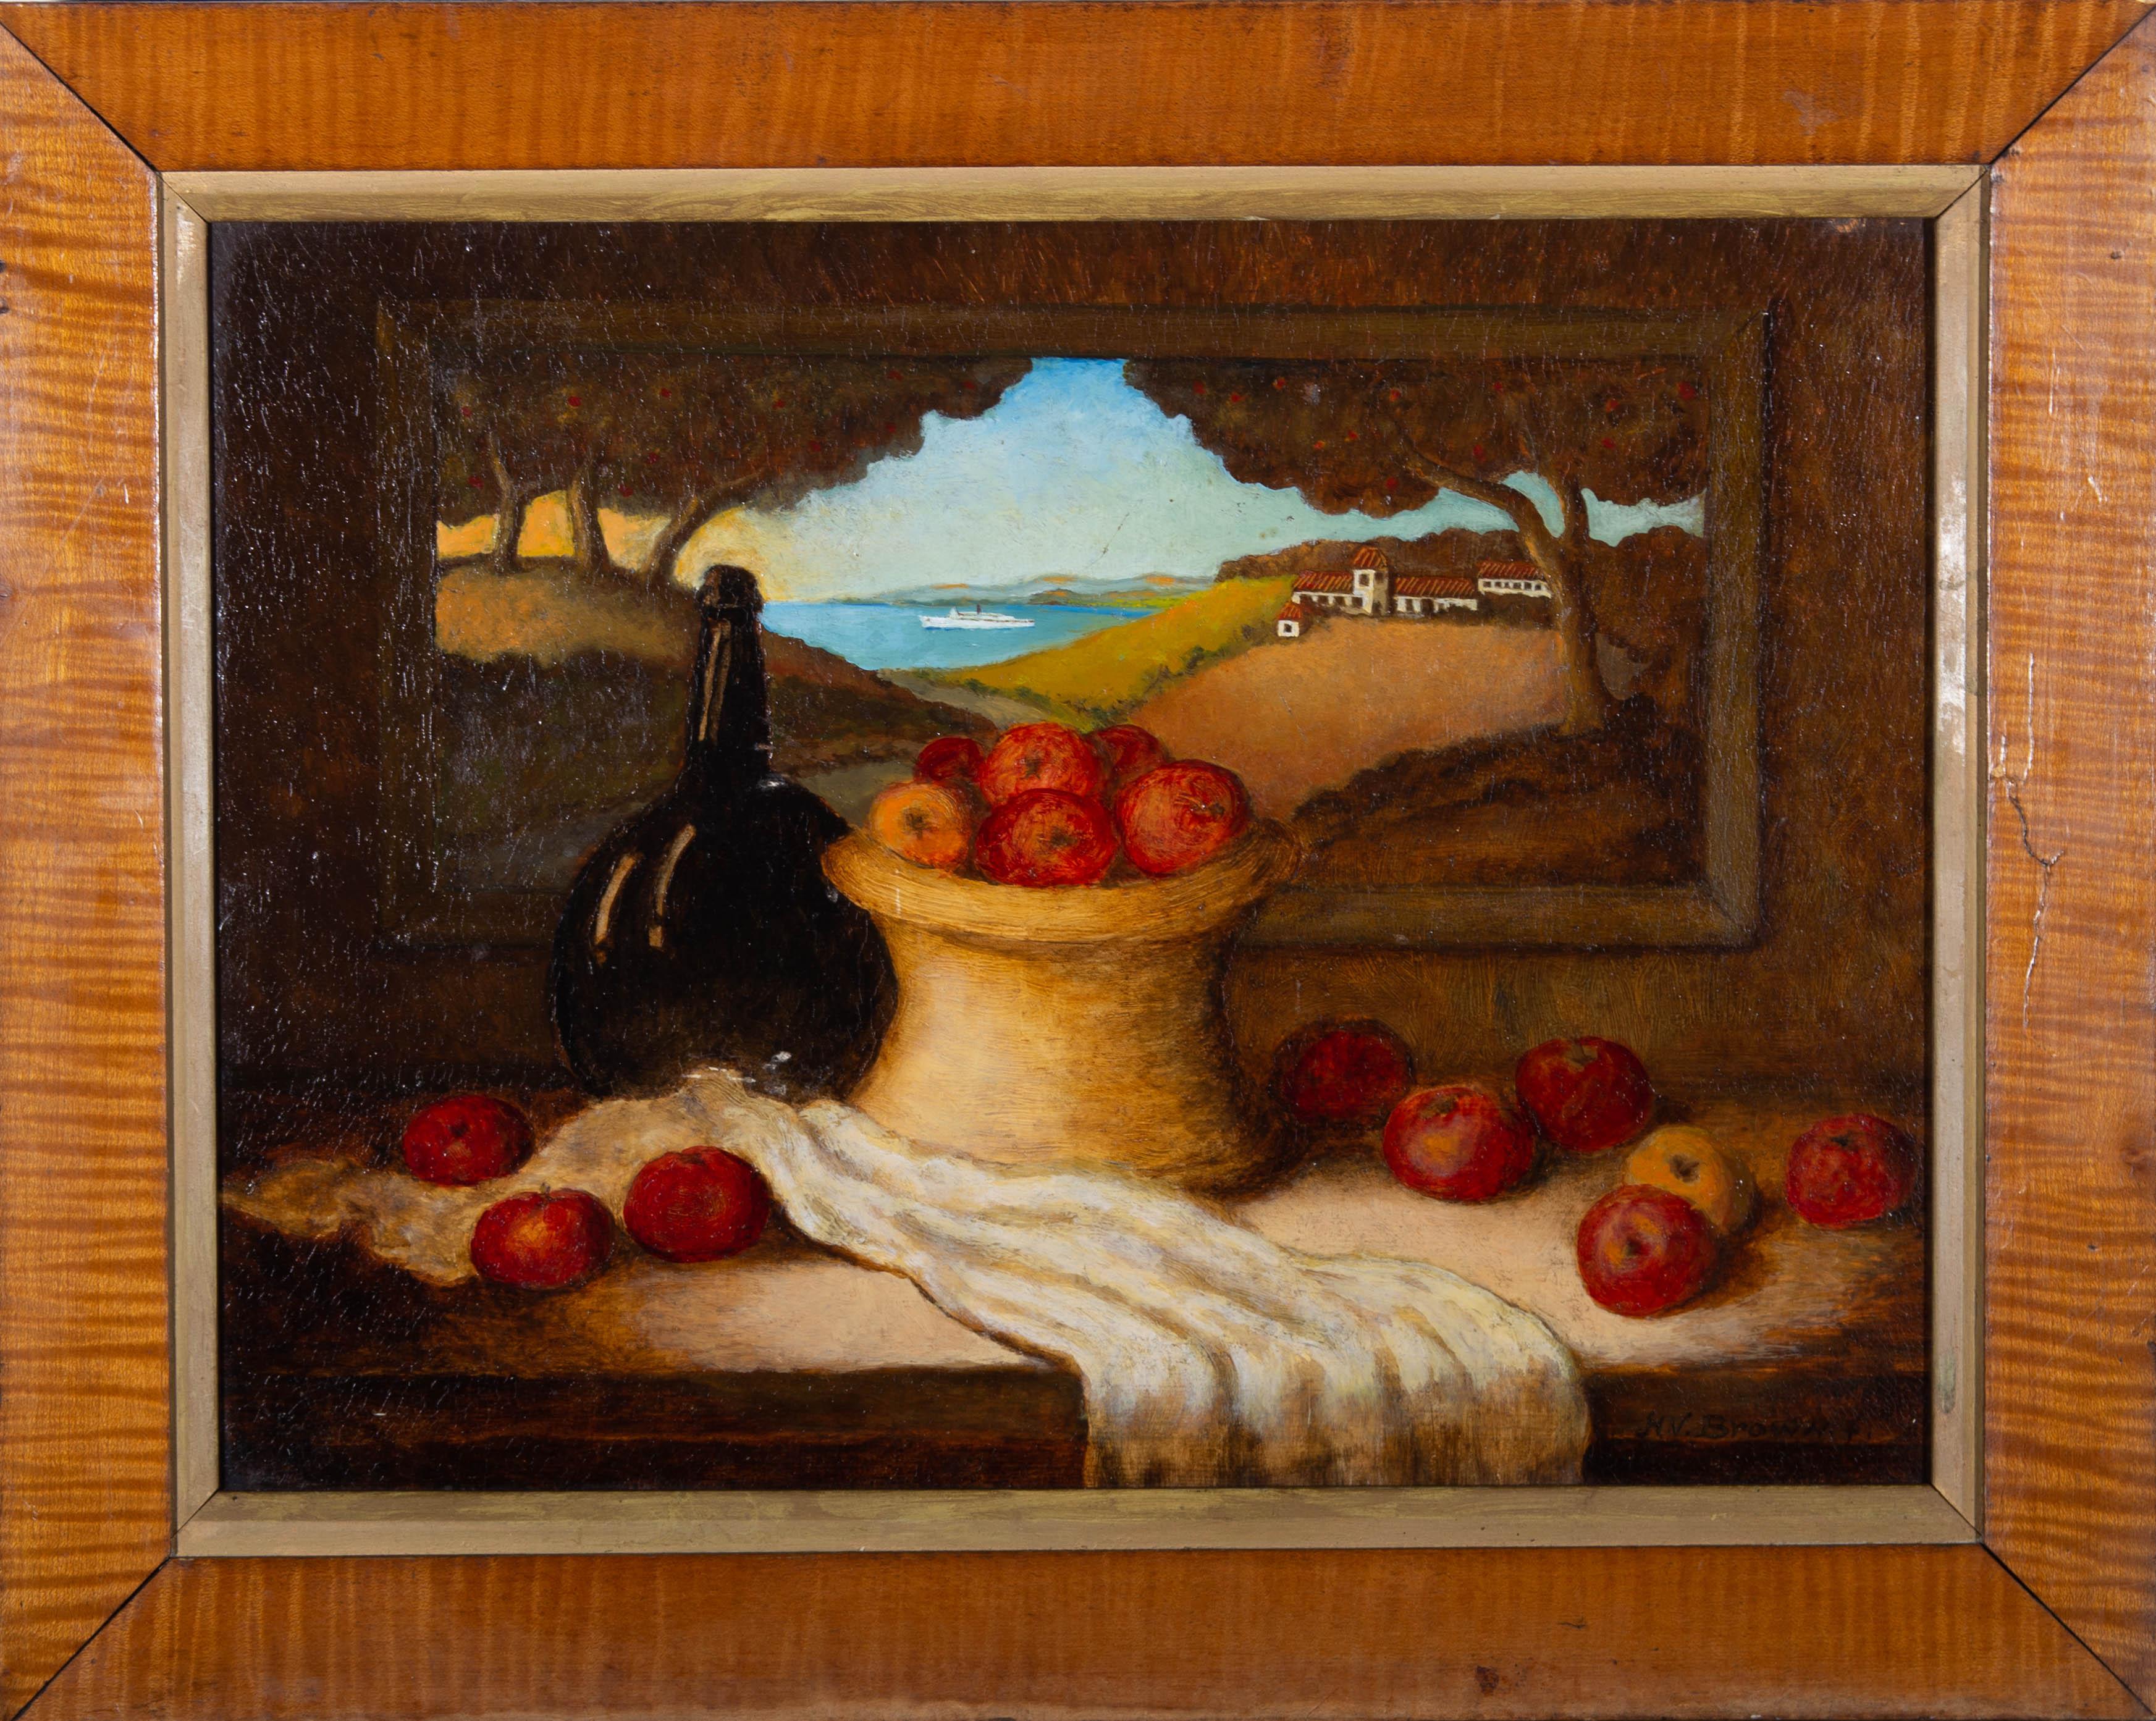 Diese lebhafte Stilllebenstudie zeigt einen Korb mit Äpfeln neben einer dunklen Glasflasche und einem weißen Tuch. Hinter den Objekten ist ein Landschaftsgemälde aufgehängt, das eine malerische Landschaft bei Sonnenuntergang zeigt. Der Künstler hat